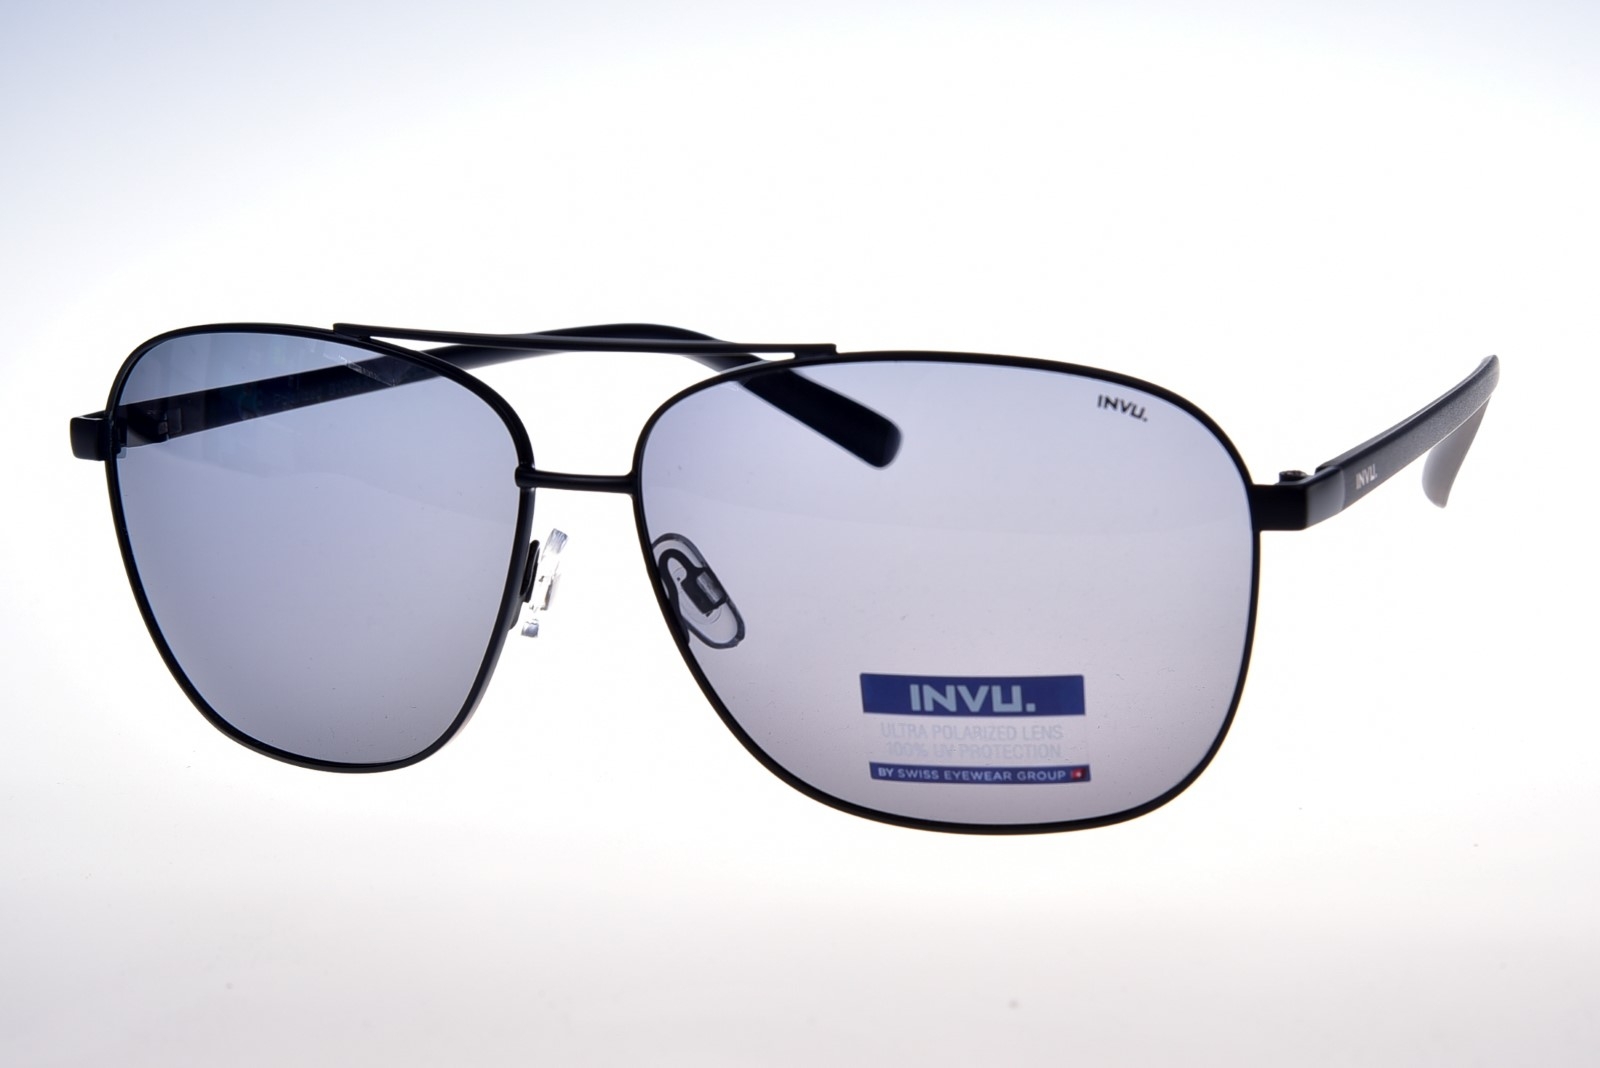 INVU. B1008A - Pánske slnečné okuliare